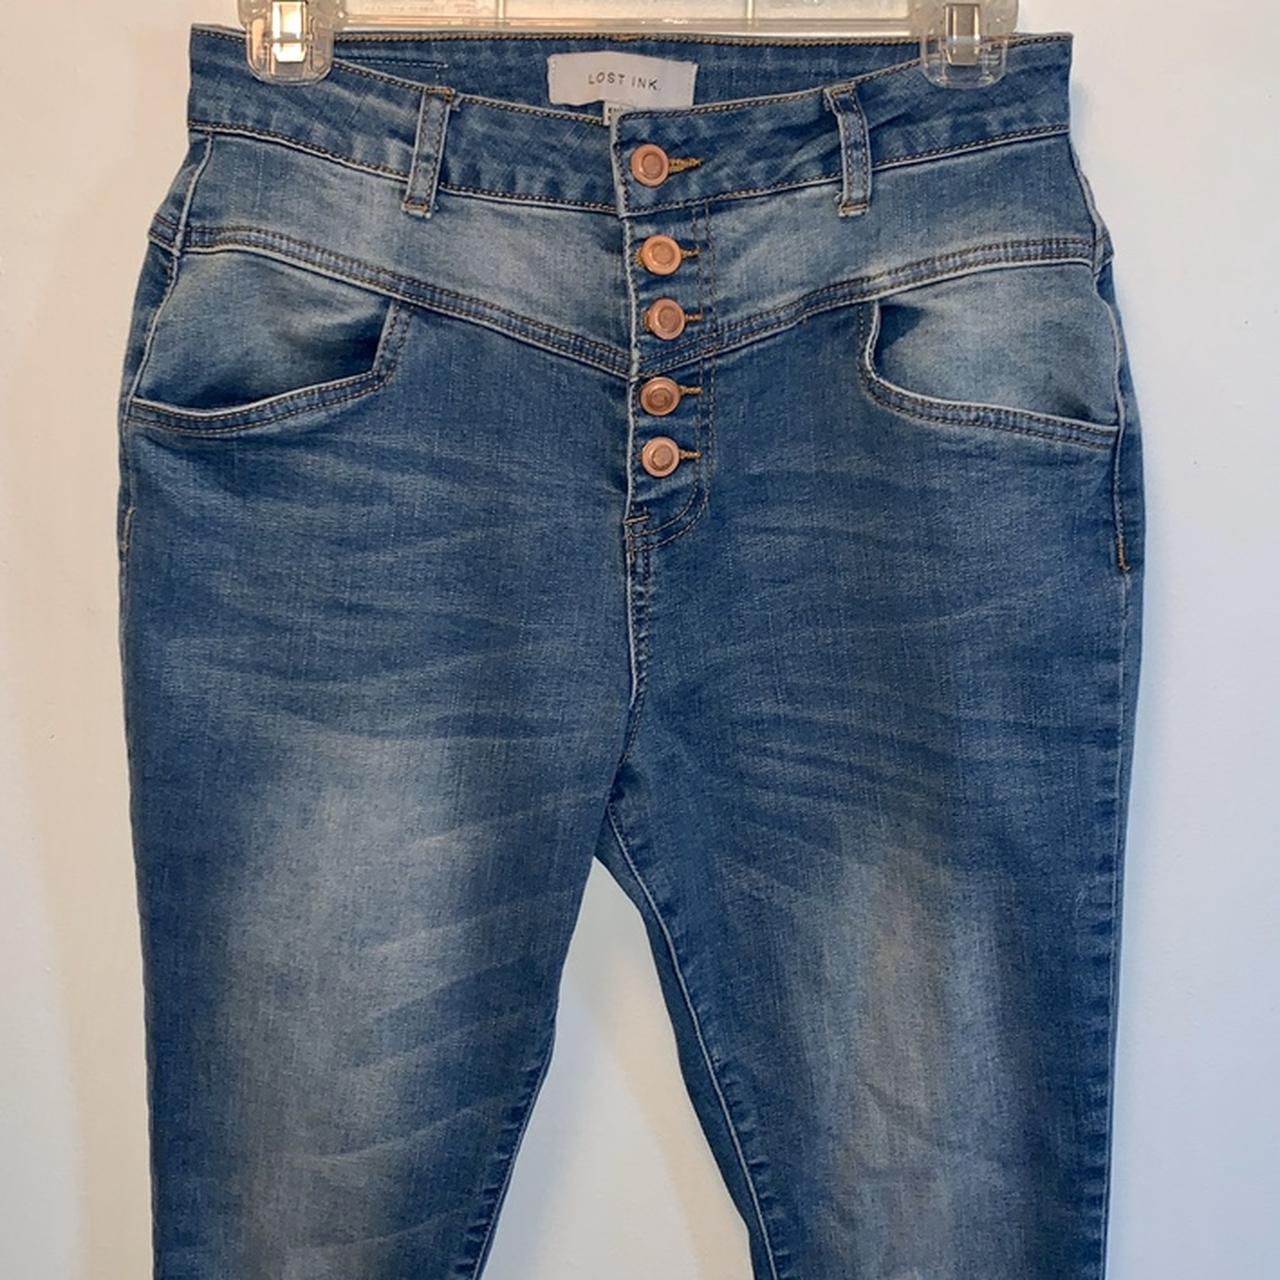 Product Image 3 - Indigo High Waist Skinny Jeans

UK